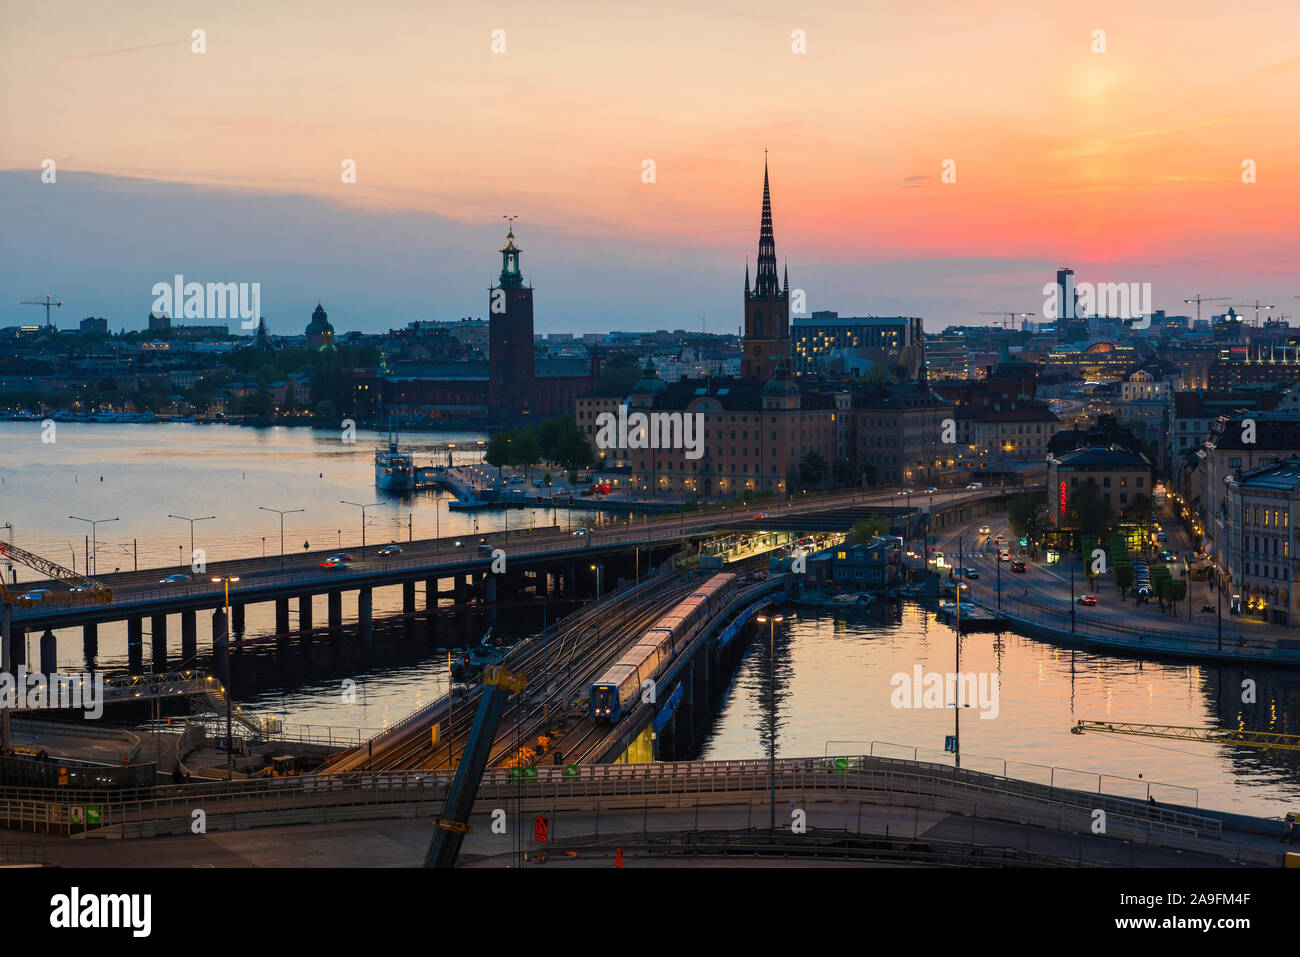 Panorama urbano di Stoccolma, vista panoramica serale estiva dei ponti che collegano i quartieri Gamla Stan e Södermalm del centro di Stoccolma, Svezia. Foto Stock